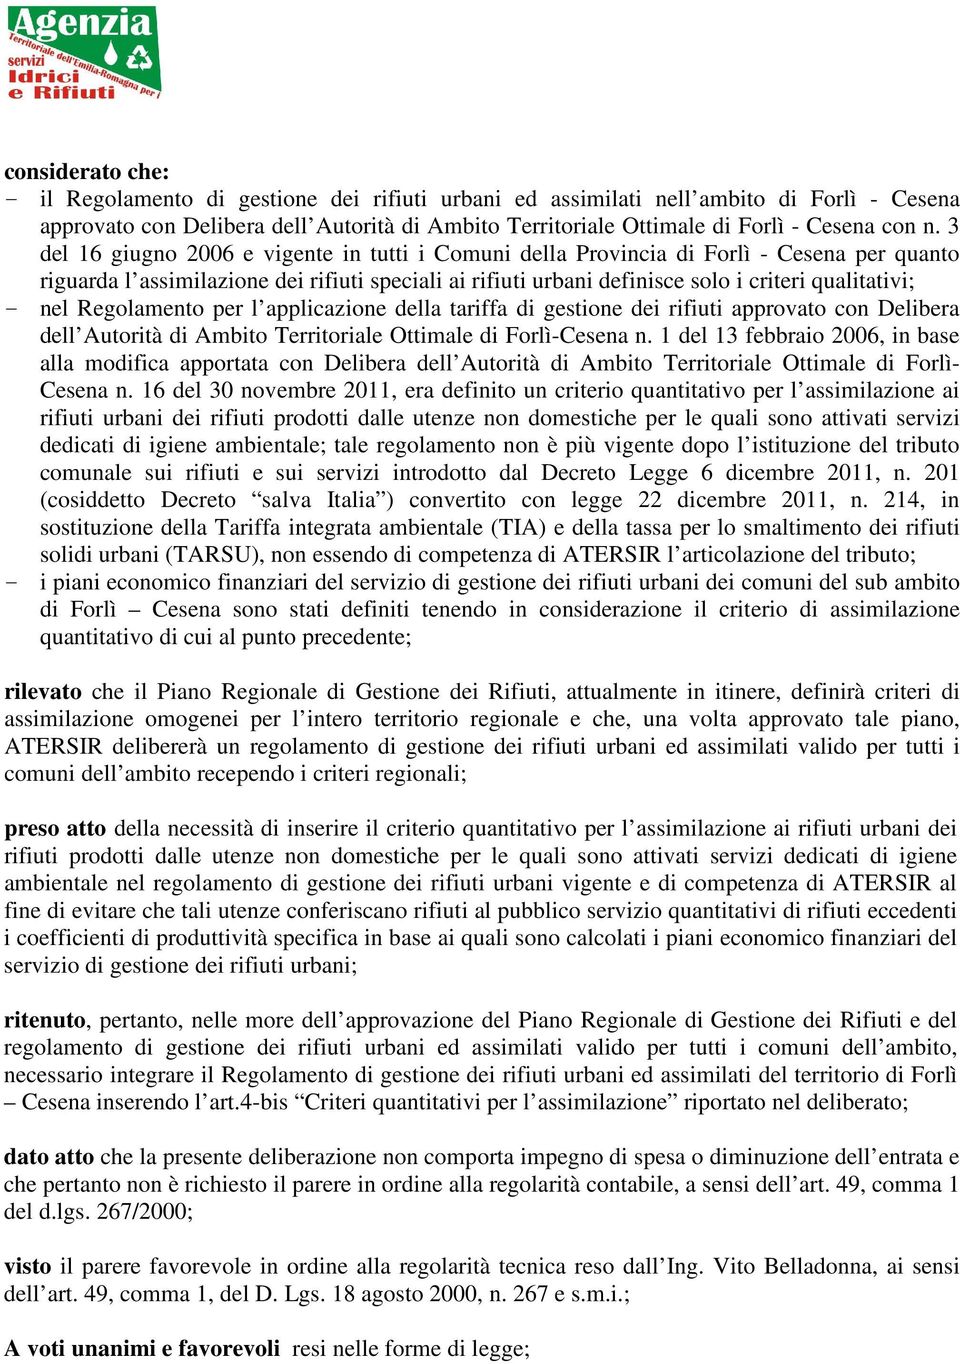 - nel Regolamento per l applicazione della tariffa di gestione dei rifiuti approvato con Delibera dell Autorità di Ambito Territoriale Ottimale di Forlì-Cesena n.